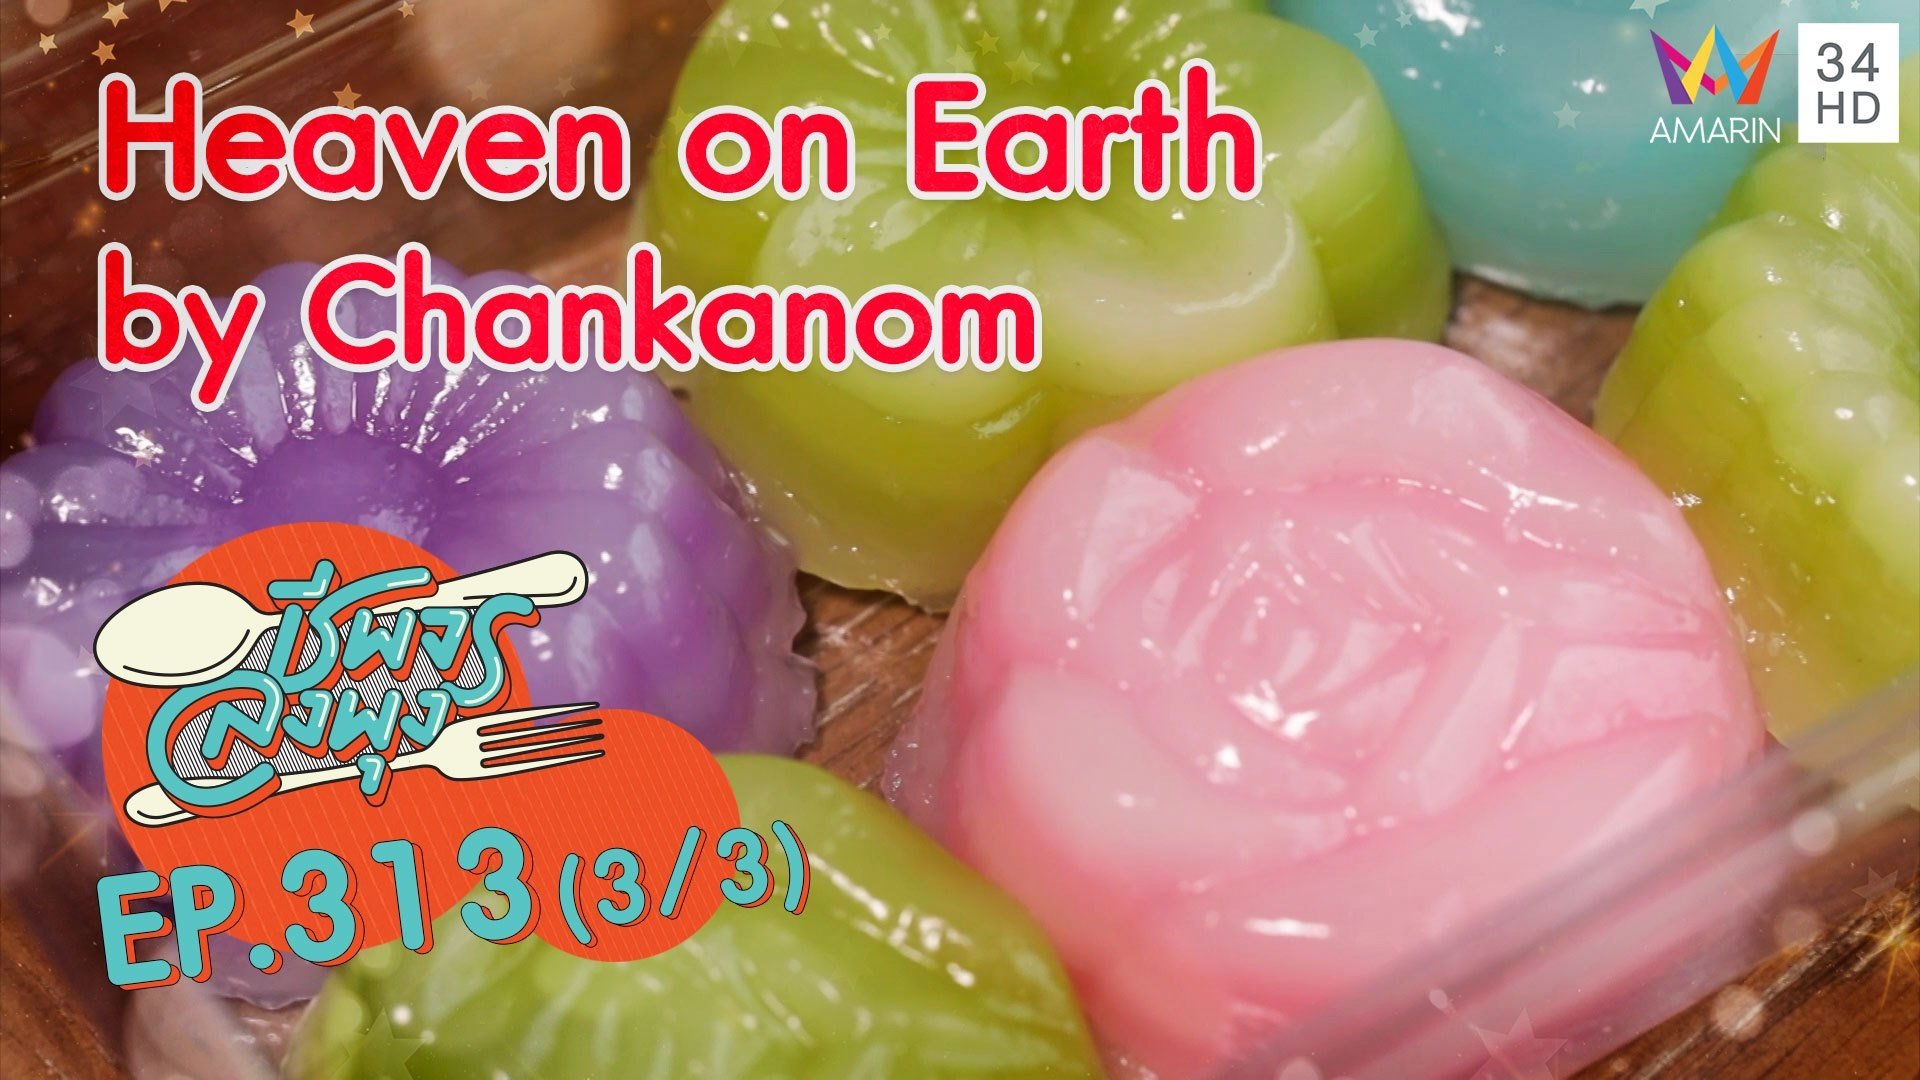 สรวงสวรรค์ของคนรักขนมไทย @ ร้าน Heaven on Earth by Chankanom | ชีพจรลงพุง | 18 ก.ค. 64 (3/3) | AMARIN TVHD34